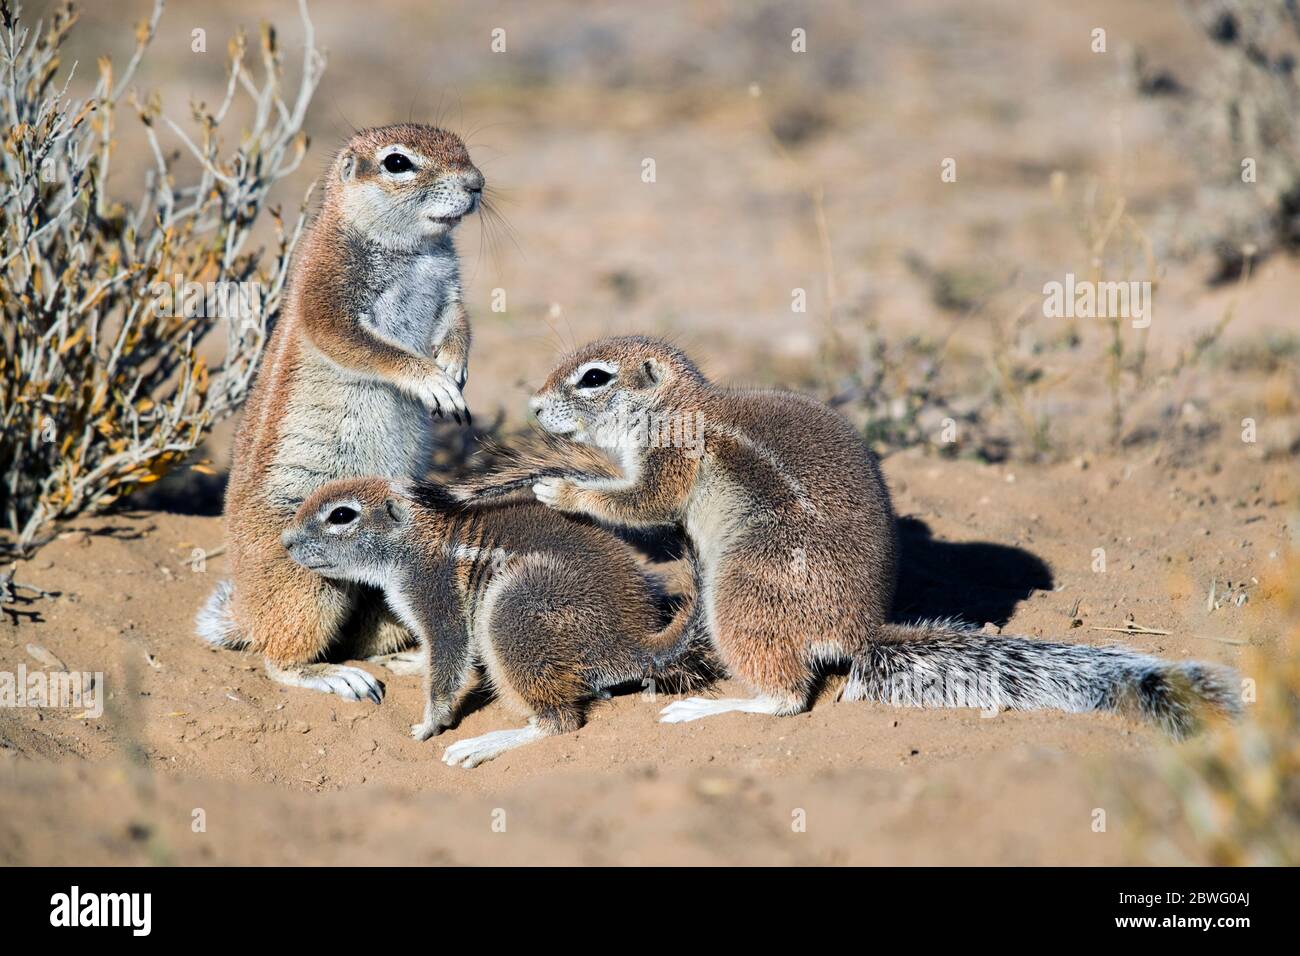 Striped ground squirrel (Xerus erythropus), Kgalagadi Transfrontier Park, Namibia, Africa Stock Photo